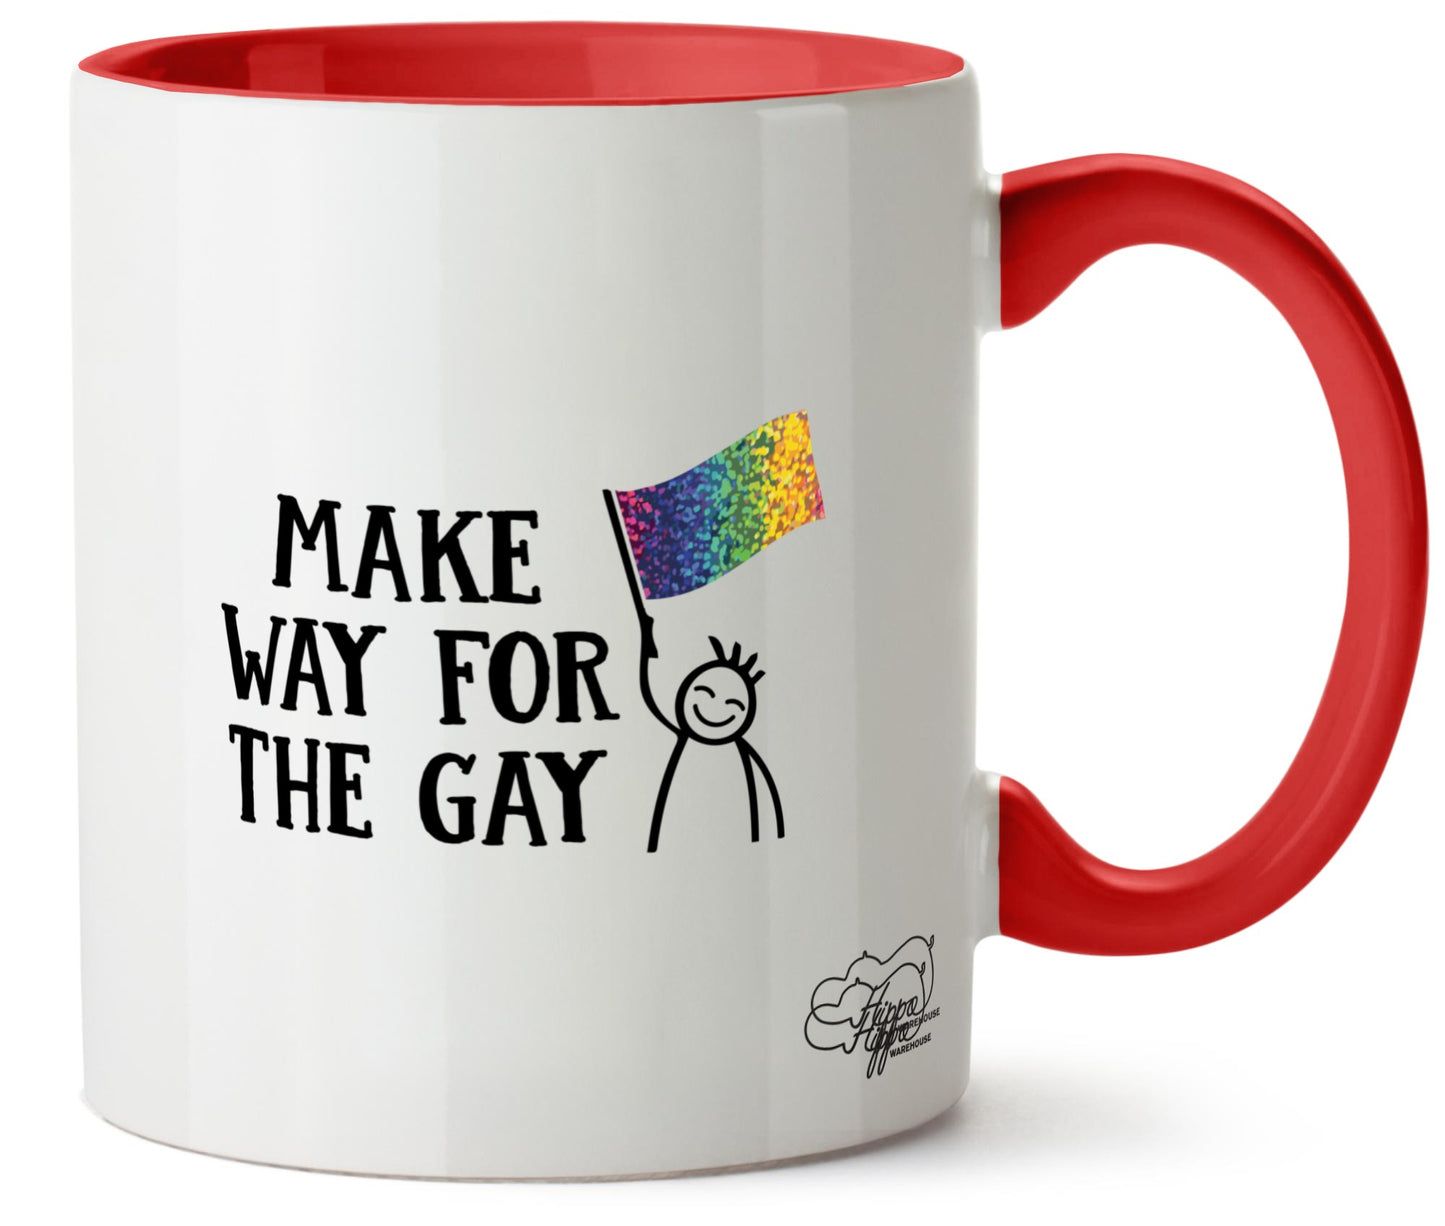 Make way for the gay LGBT Printed 11oz Mug